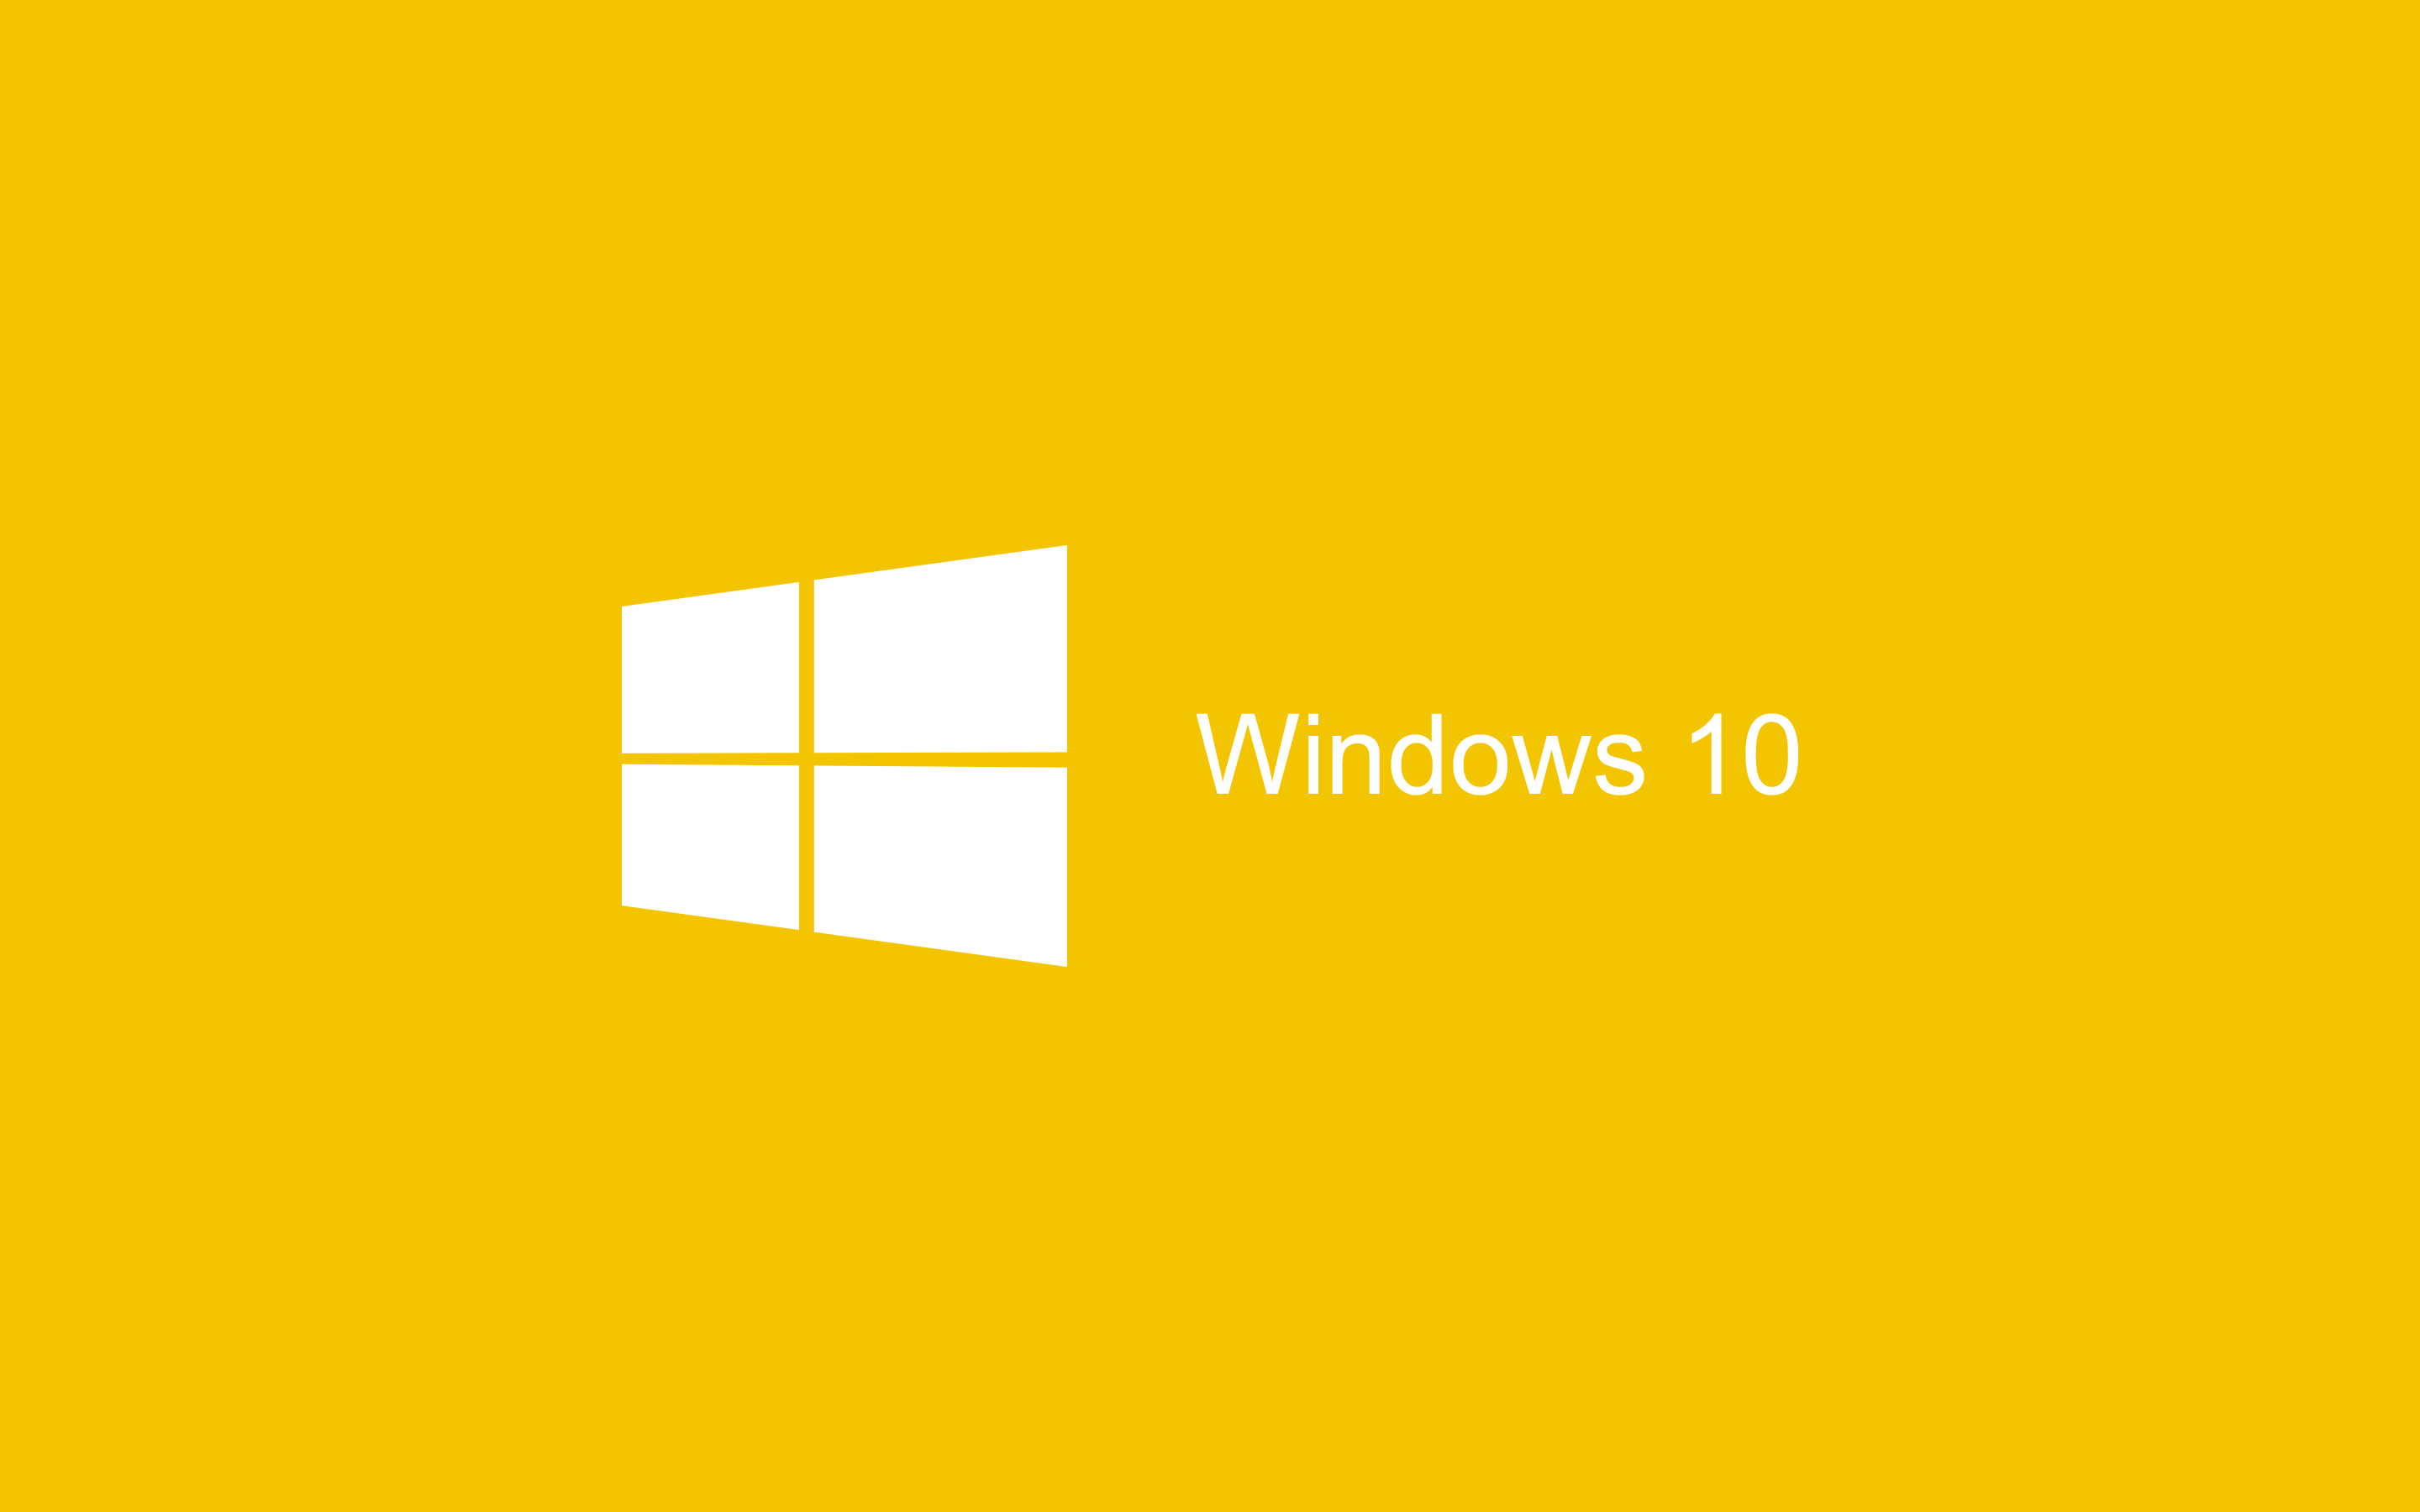 Bạn muốn thêm một chút sắc màu vào desktop của mình? Hãy xem ngay hình nền Yellow Wallpaper Windows 10 để tìm thấy những thiết kế tuyệt vời và thú vị nhất! Hình ảnh liên quan đang chờ bạn khám phá đó!